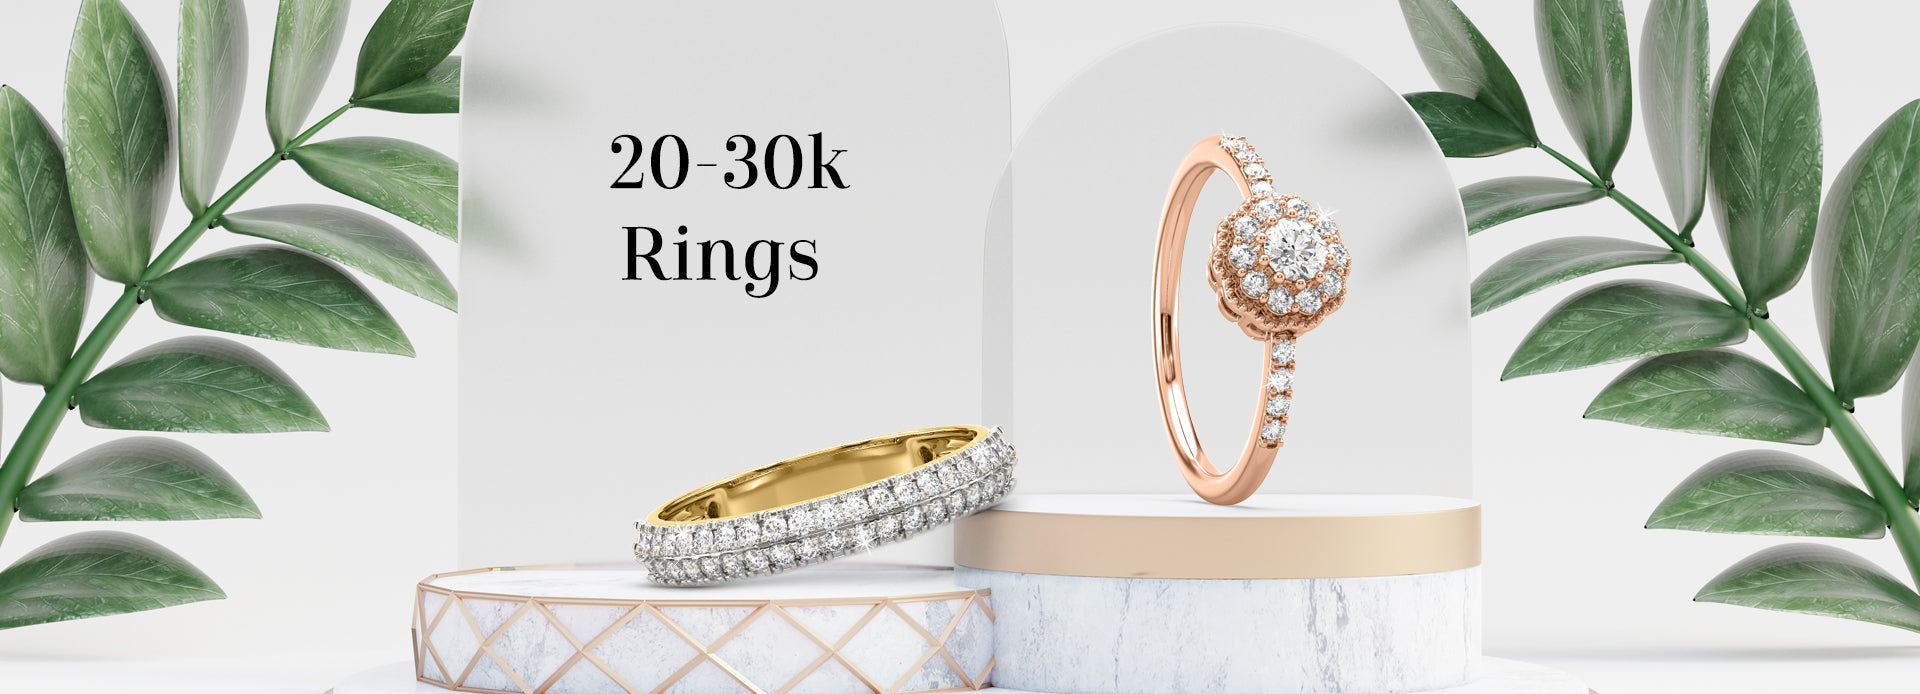 20-30k Rings